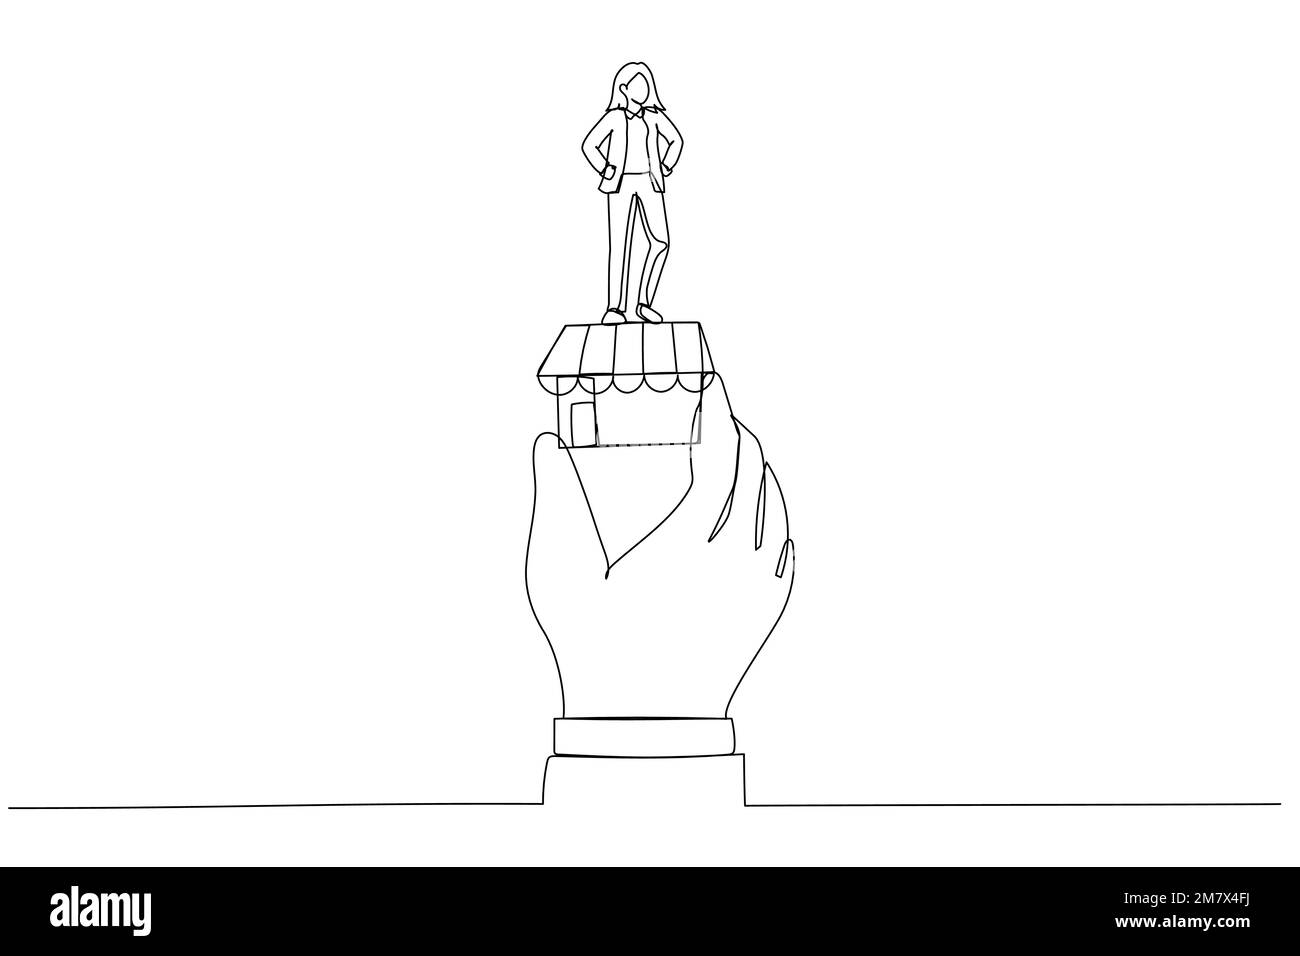 Abbildung einer erfolgreichen Geschäftsfrau, die die Siegerflagge in einer riesigen Hand auf einem kleinen Geschäft hält. Metapher für die Idee eines kleinen Unternehmens, erfolgreicher Unternehmer. Sünde Stock Vektor